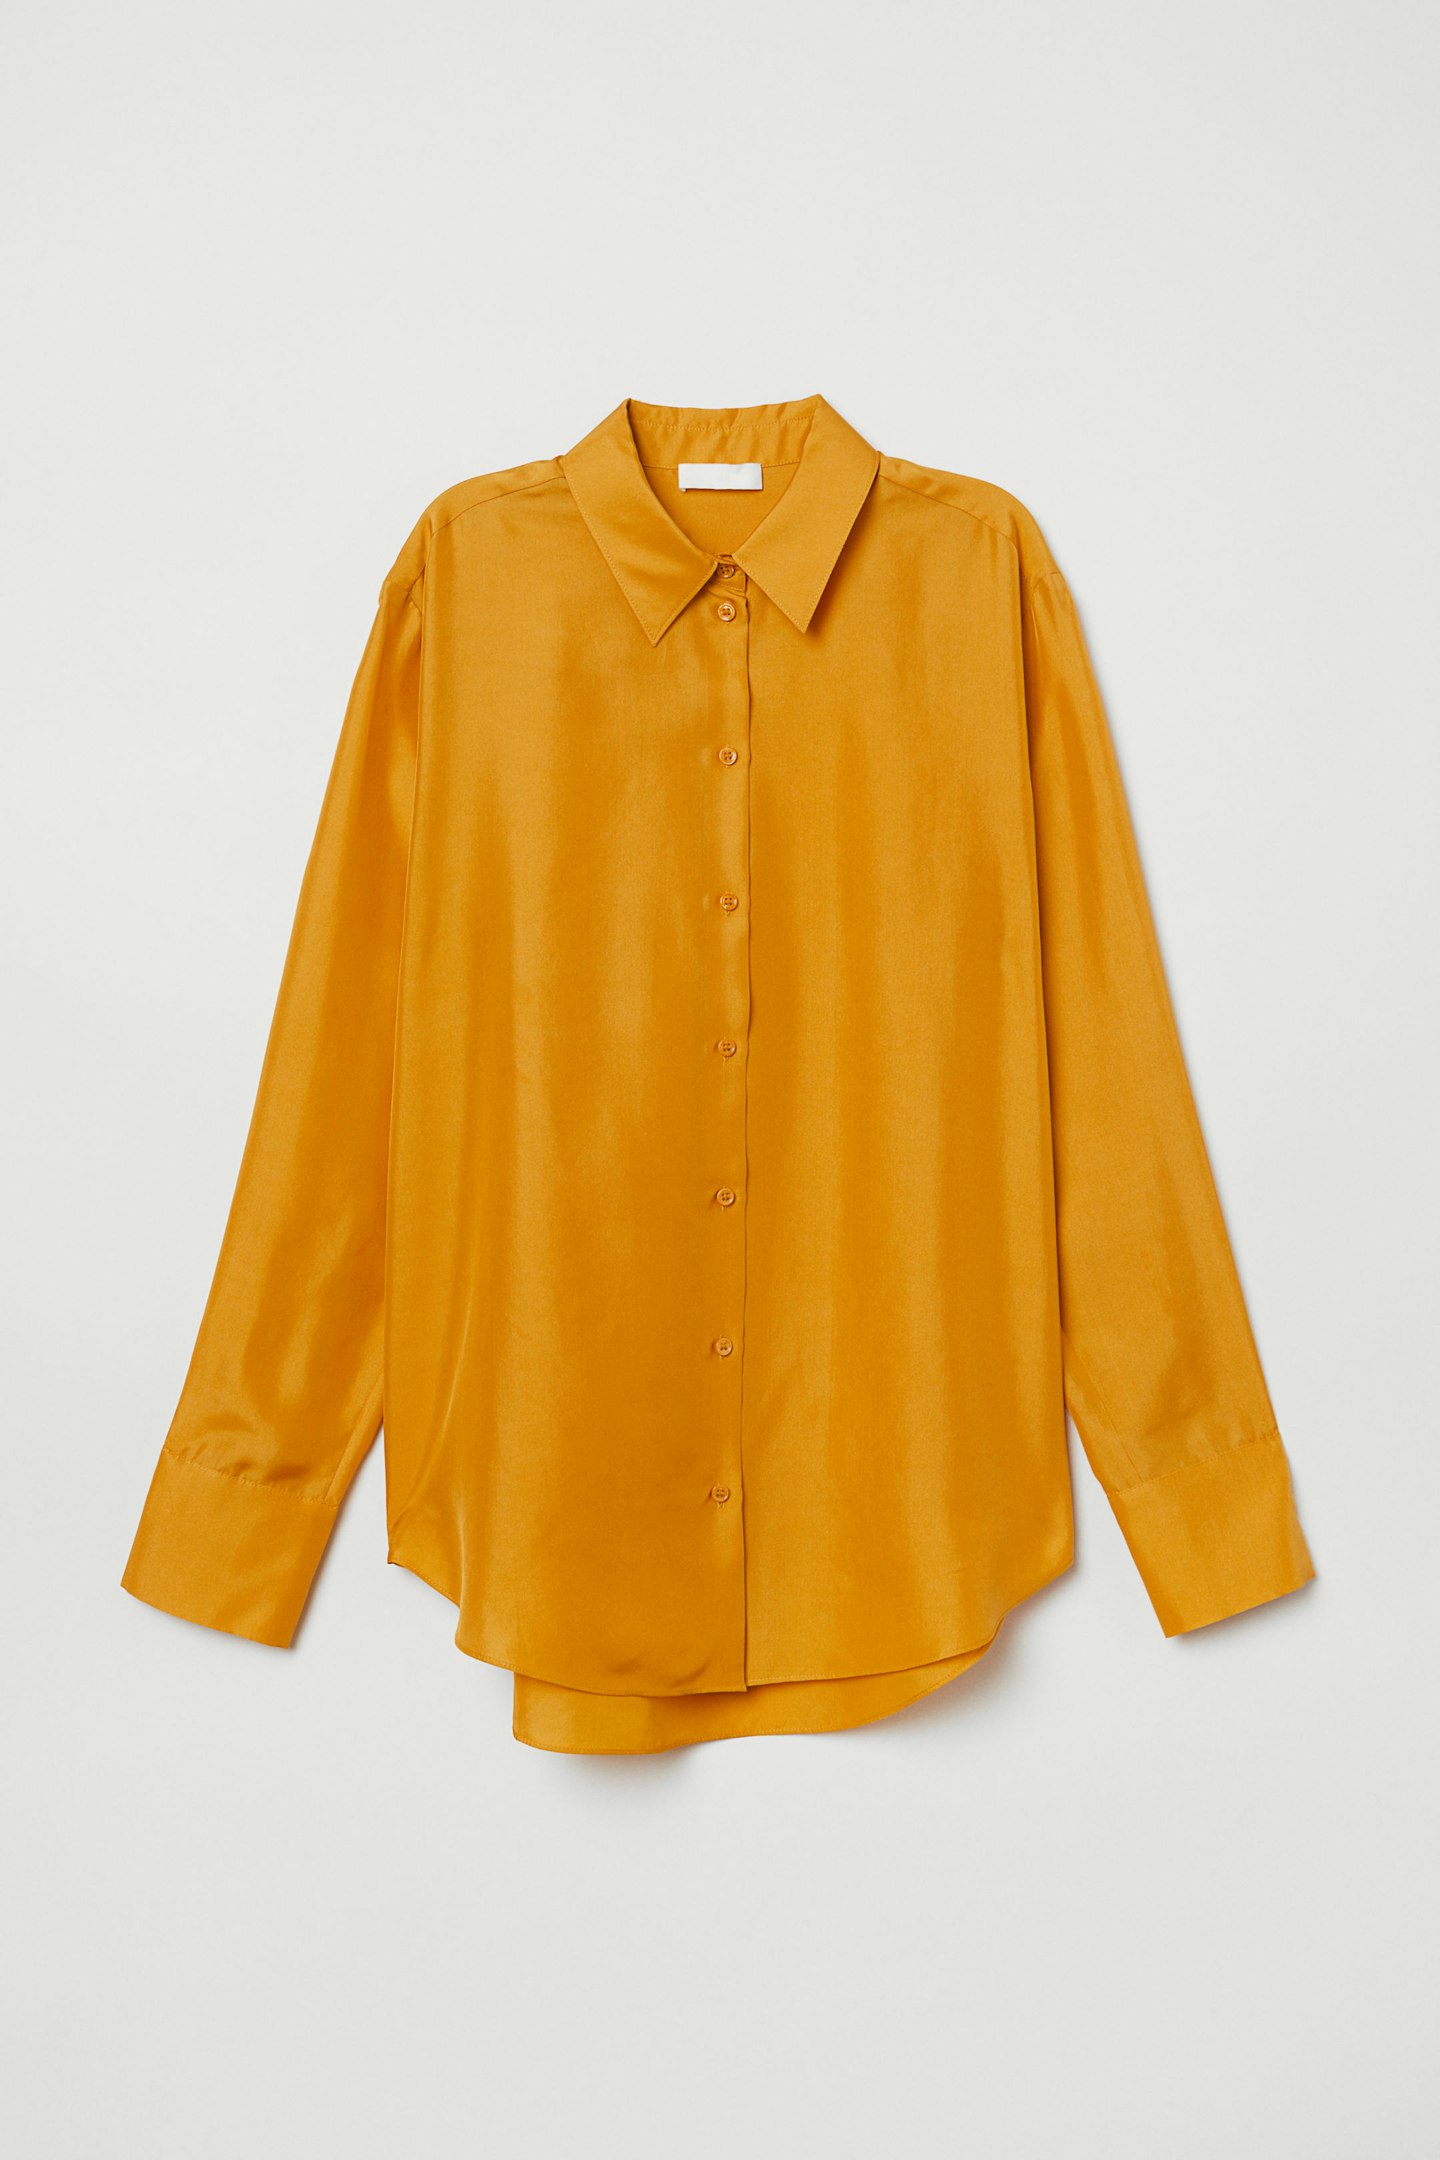 H&M, Silk Shirt, £69.99